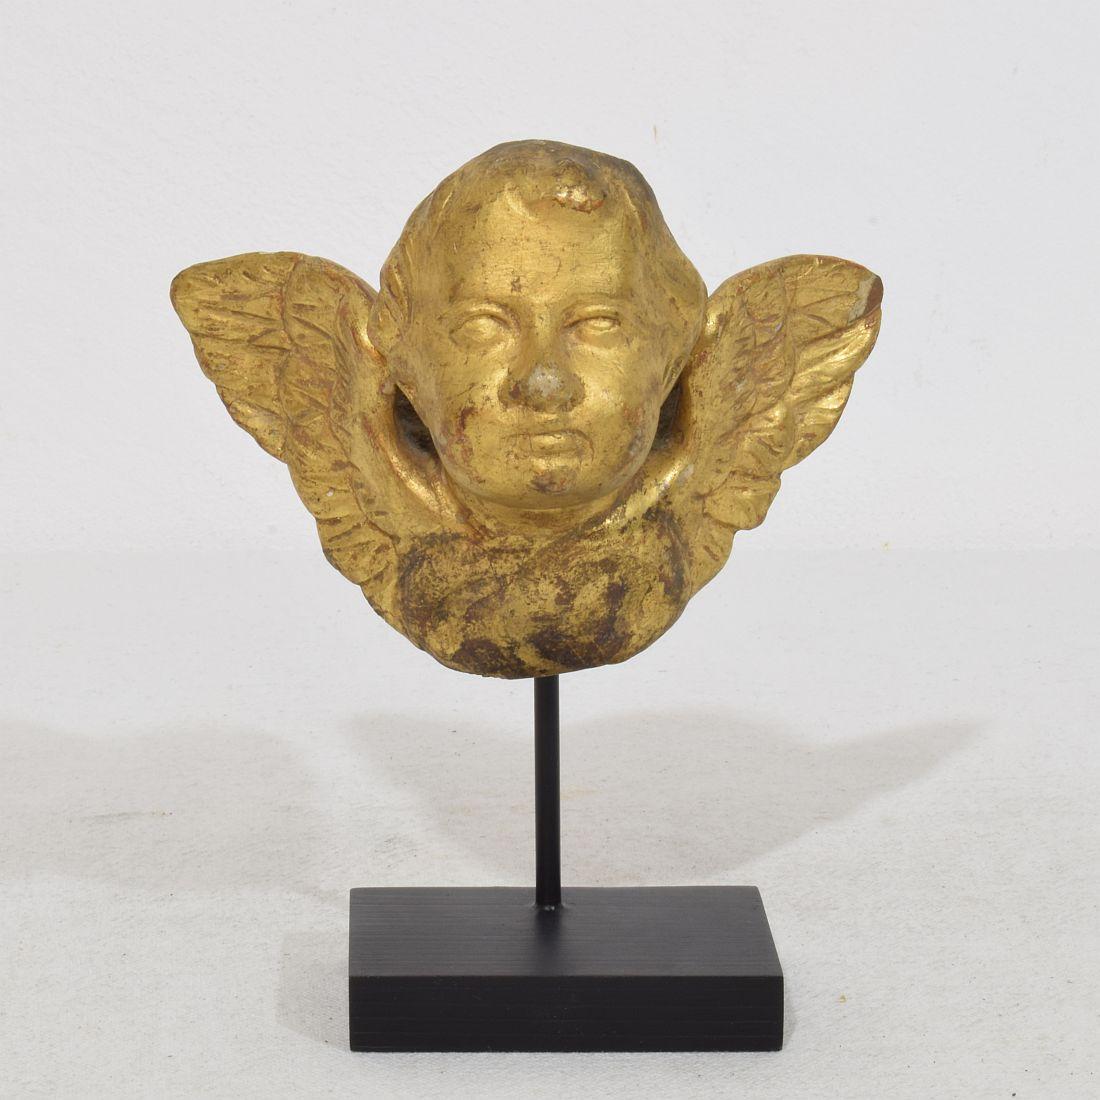 Merveilleuse petite tête d'ange ailée sculptée à la main avec sa dorure d'origine.
Italie, vers 1750
Météorisé.
Mesure ci-dessous incluant la base en bois.
H:14cm  L:11,5cm P:7cm 